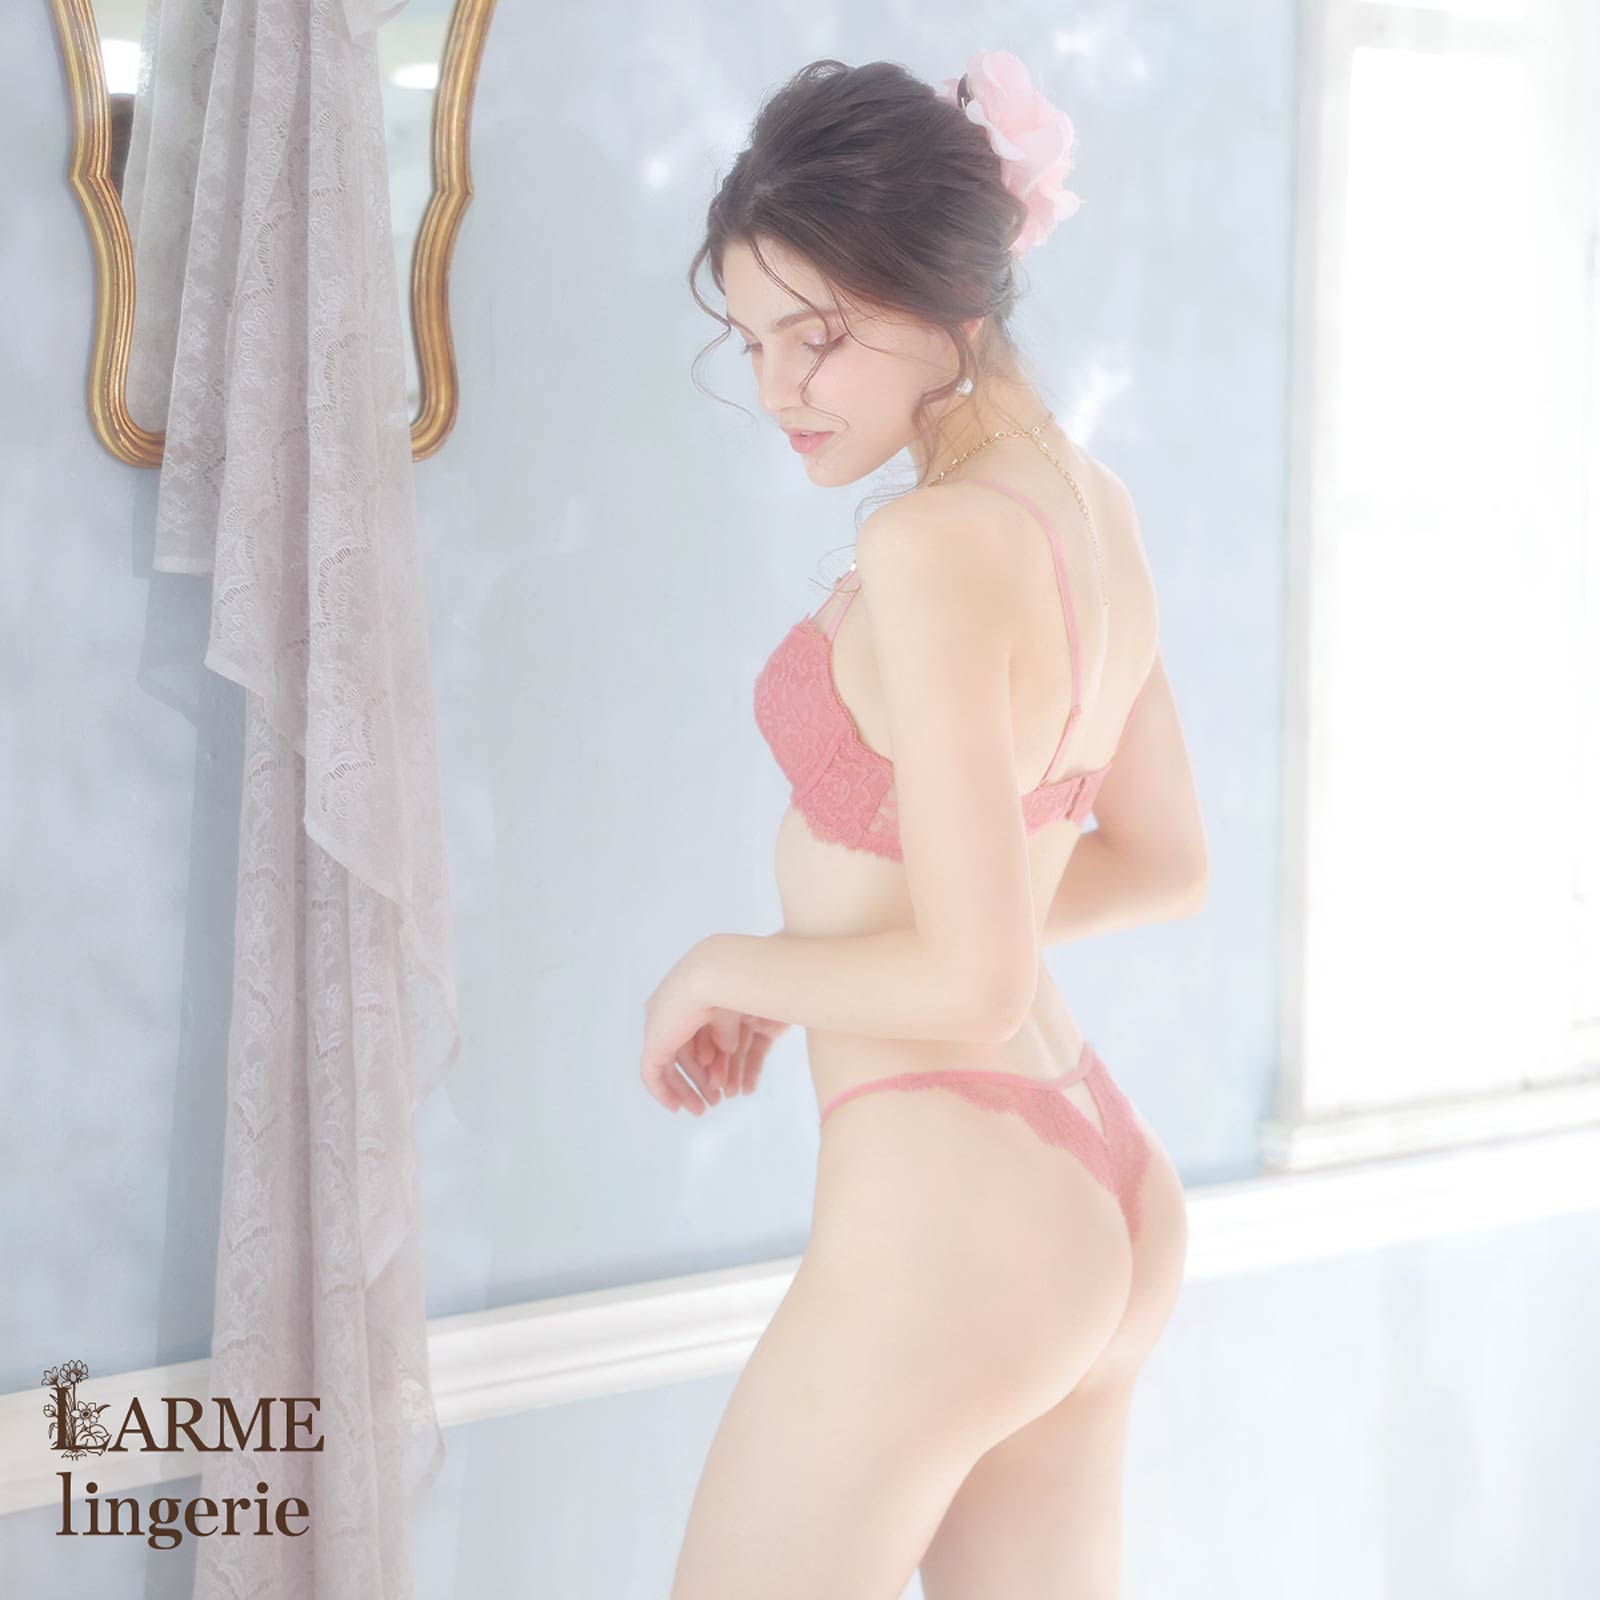 【LARME】[お試し2000円off!!] Sensual all lace Bra&T-back/Pink センシュアルオールレースブラ&Tバック/ピンク